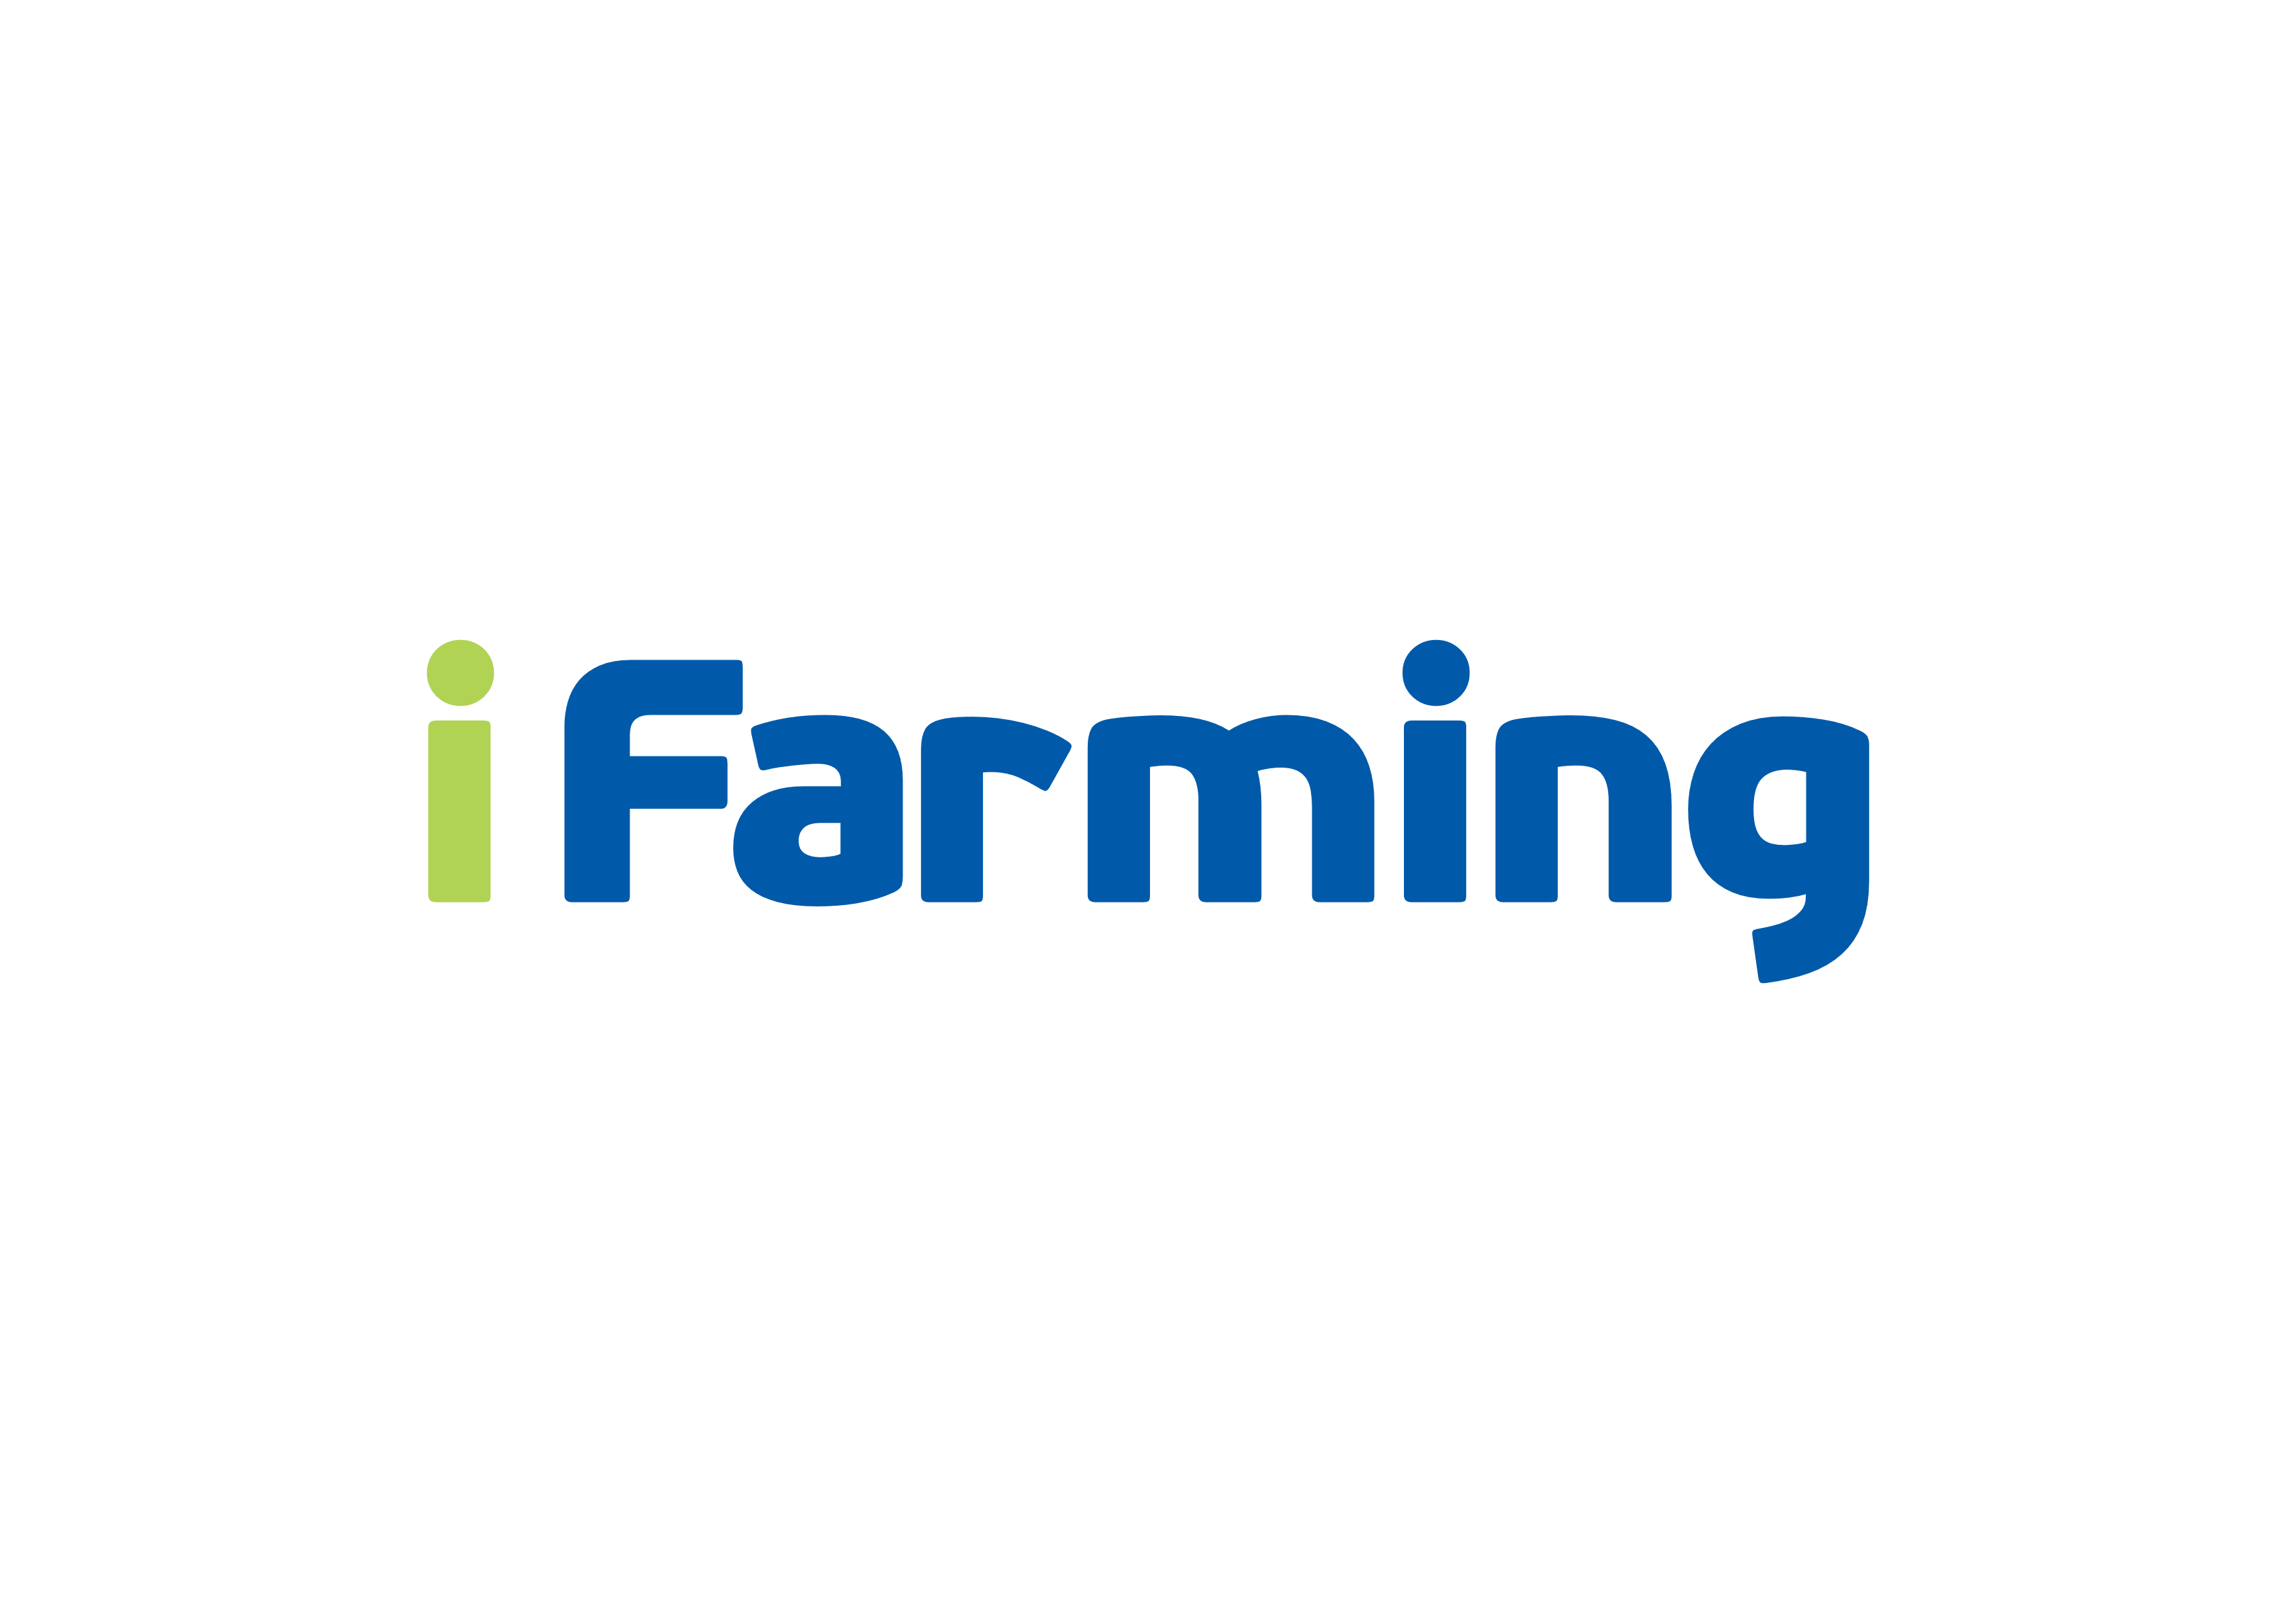 iFarming - интеллектуальное сельское хозяйство